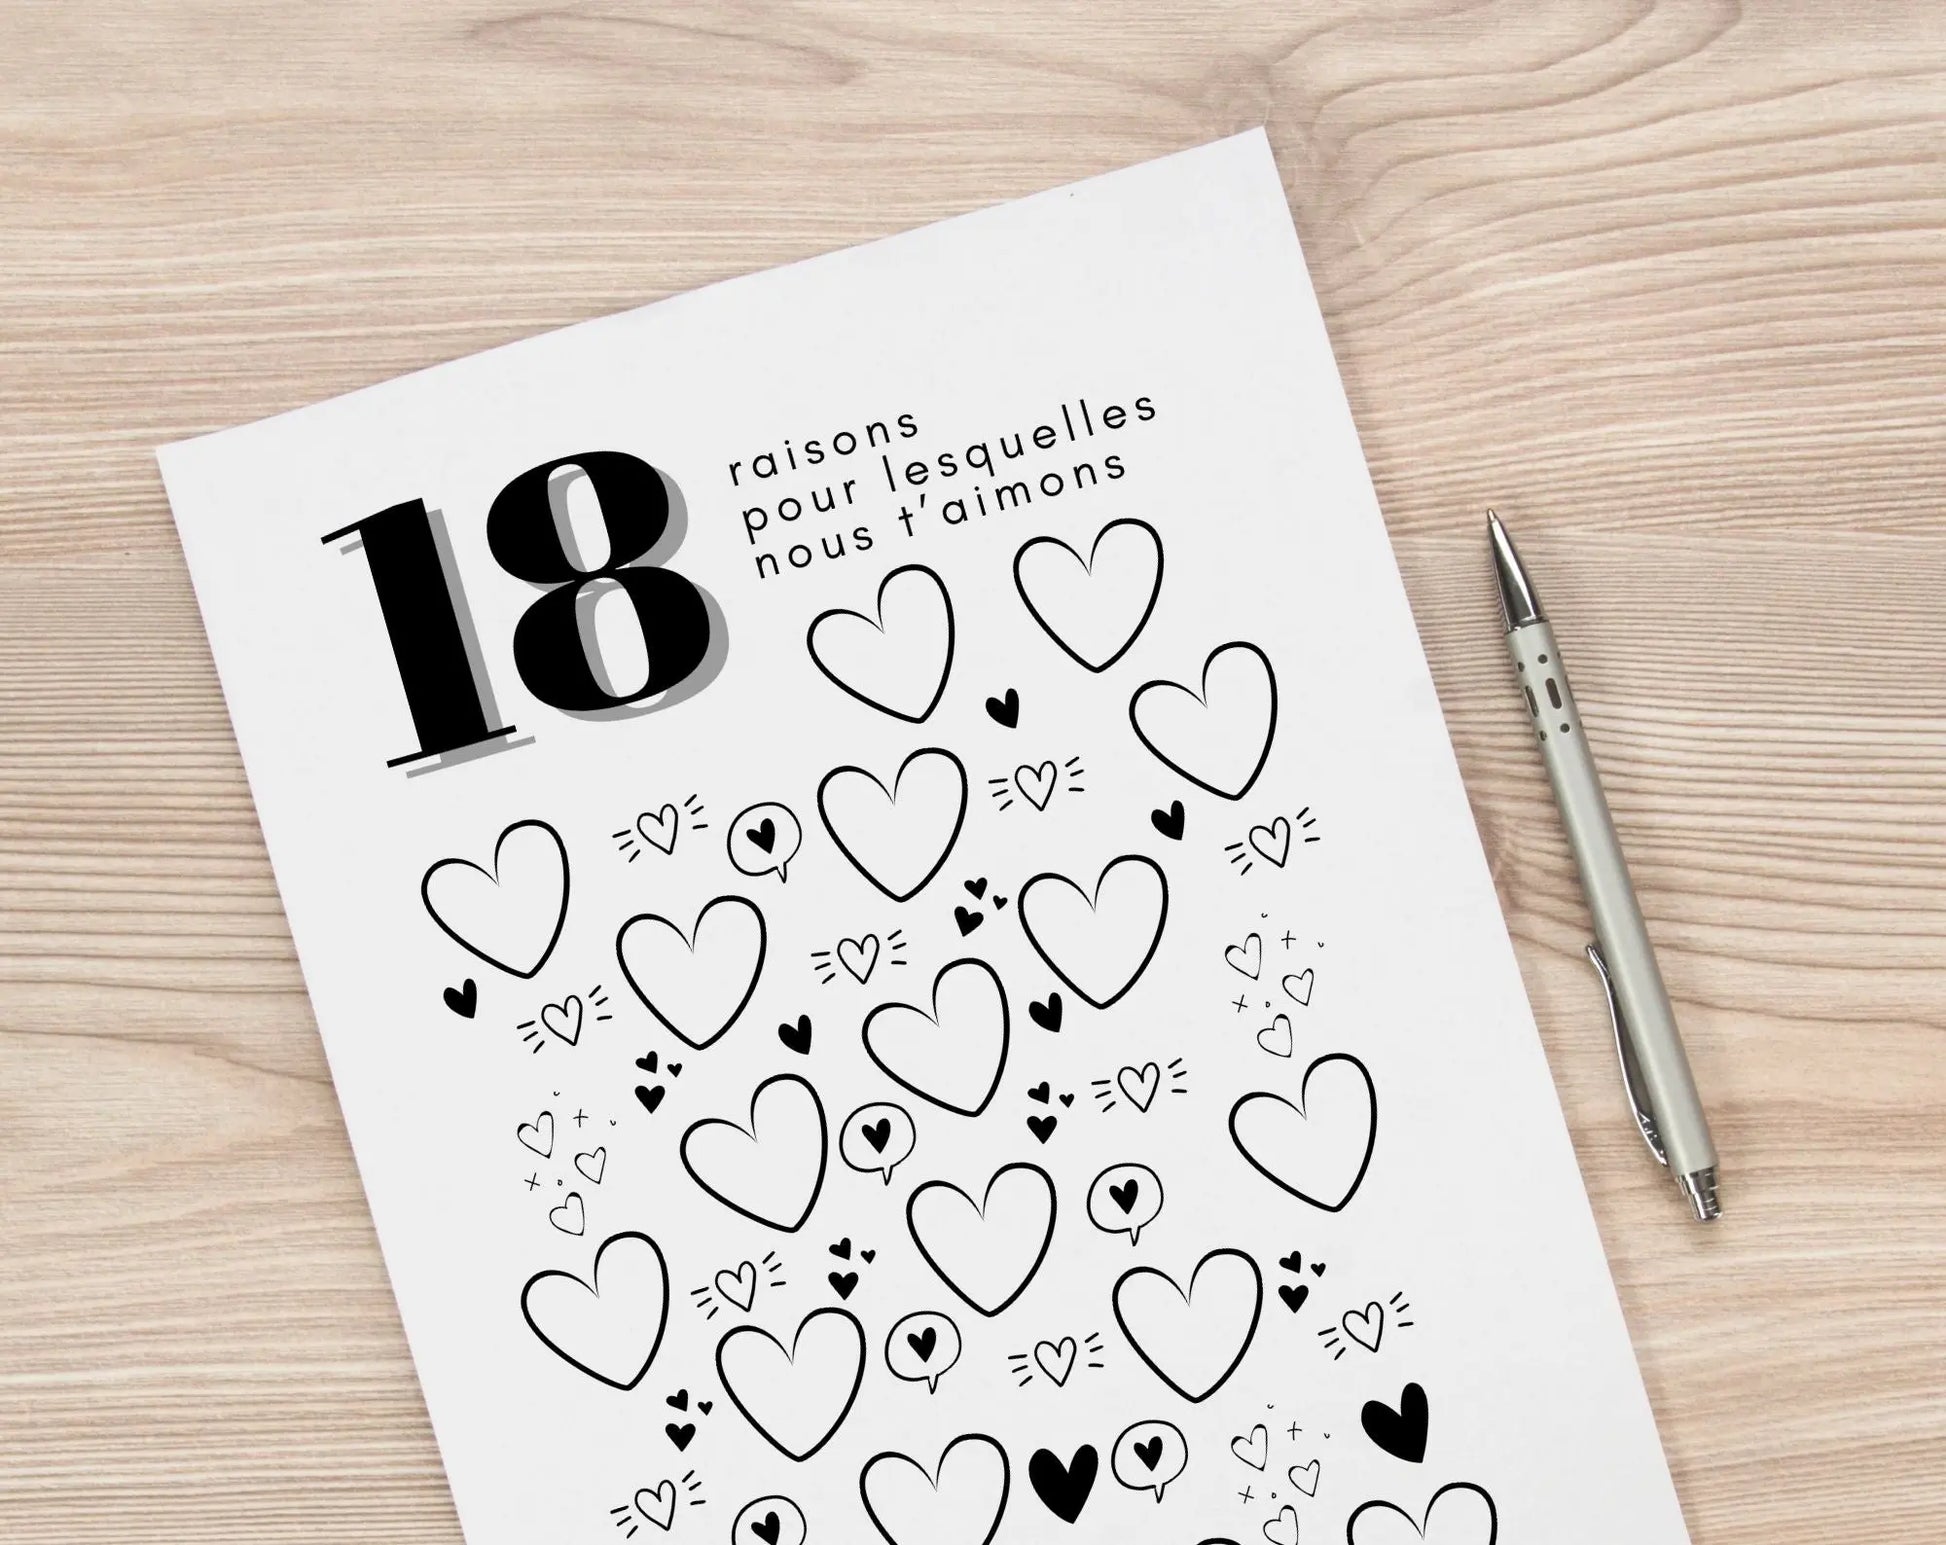 Affiche 18 raisons pour lesquelles nous t’aimons - Livre d'or 18 ans FLTMfrance